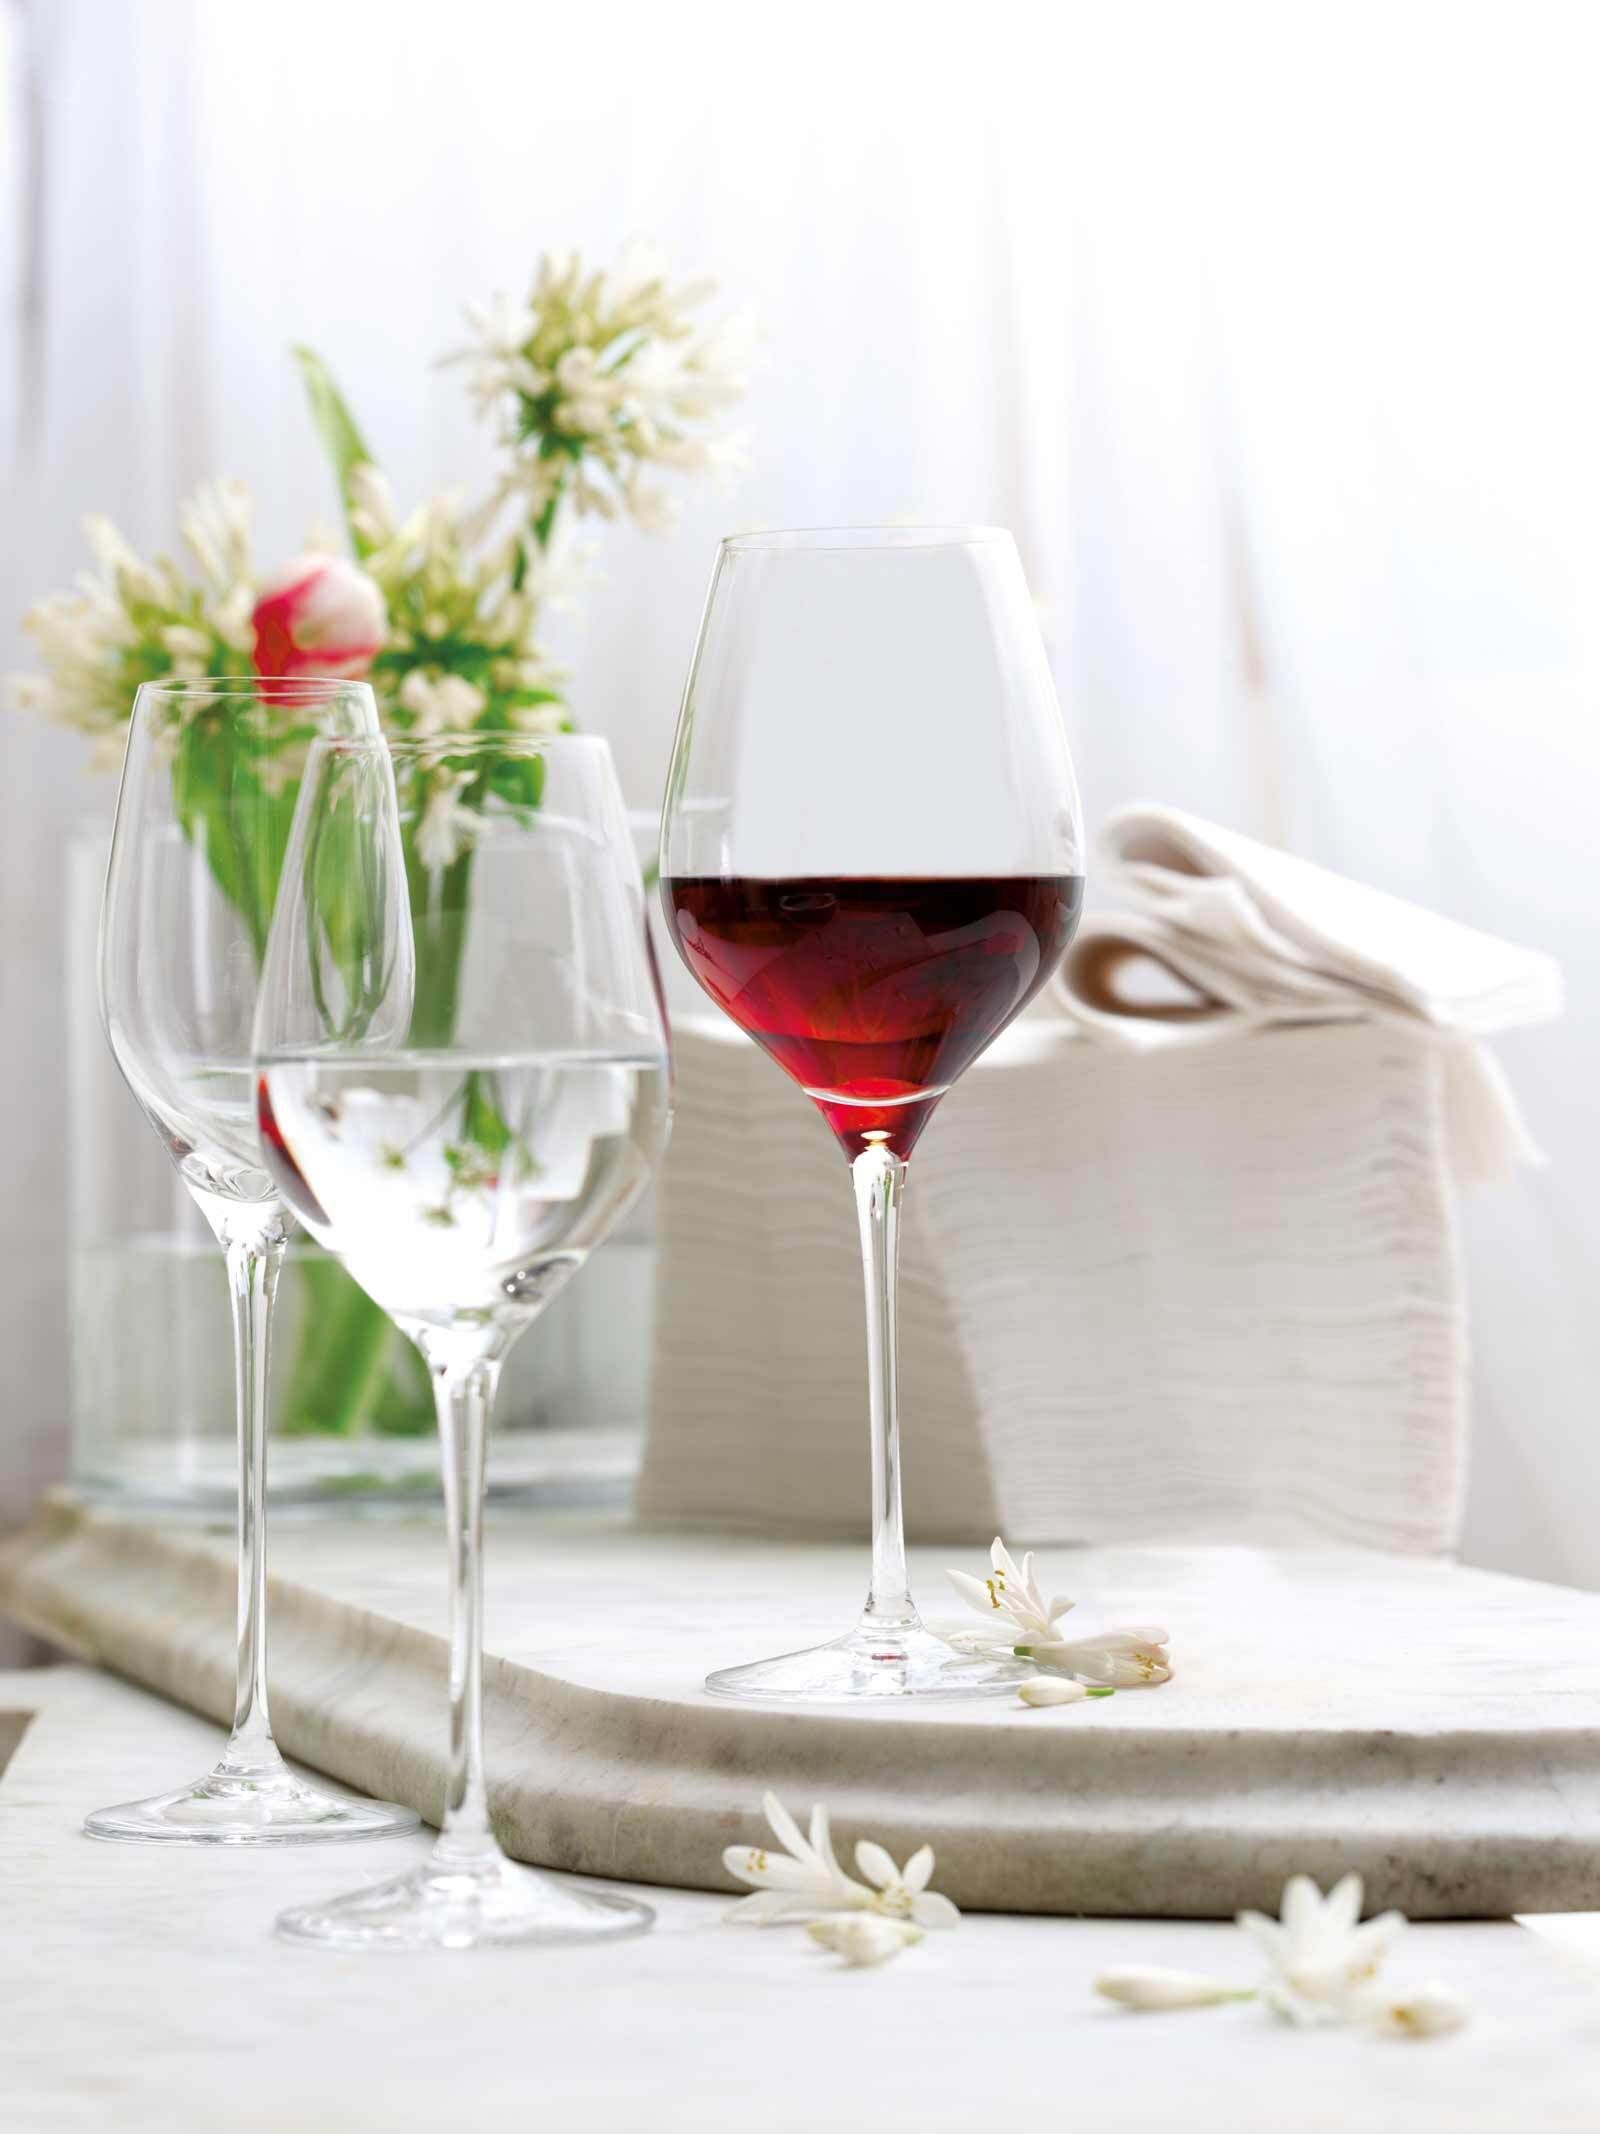 18er Glas Set, Royal und Wein- Sektgläser Stölzle Exquisit Glas